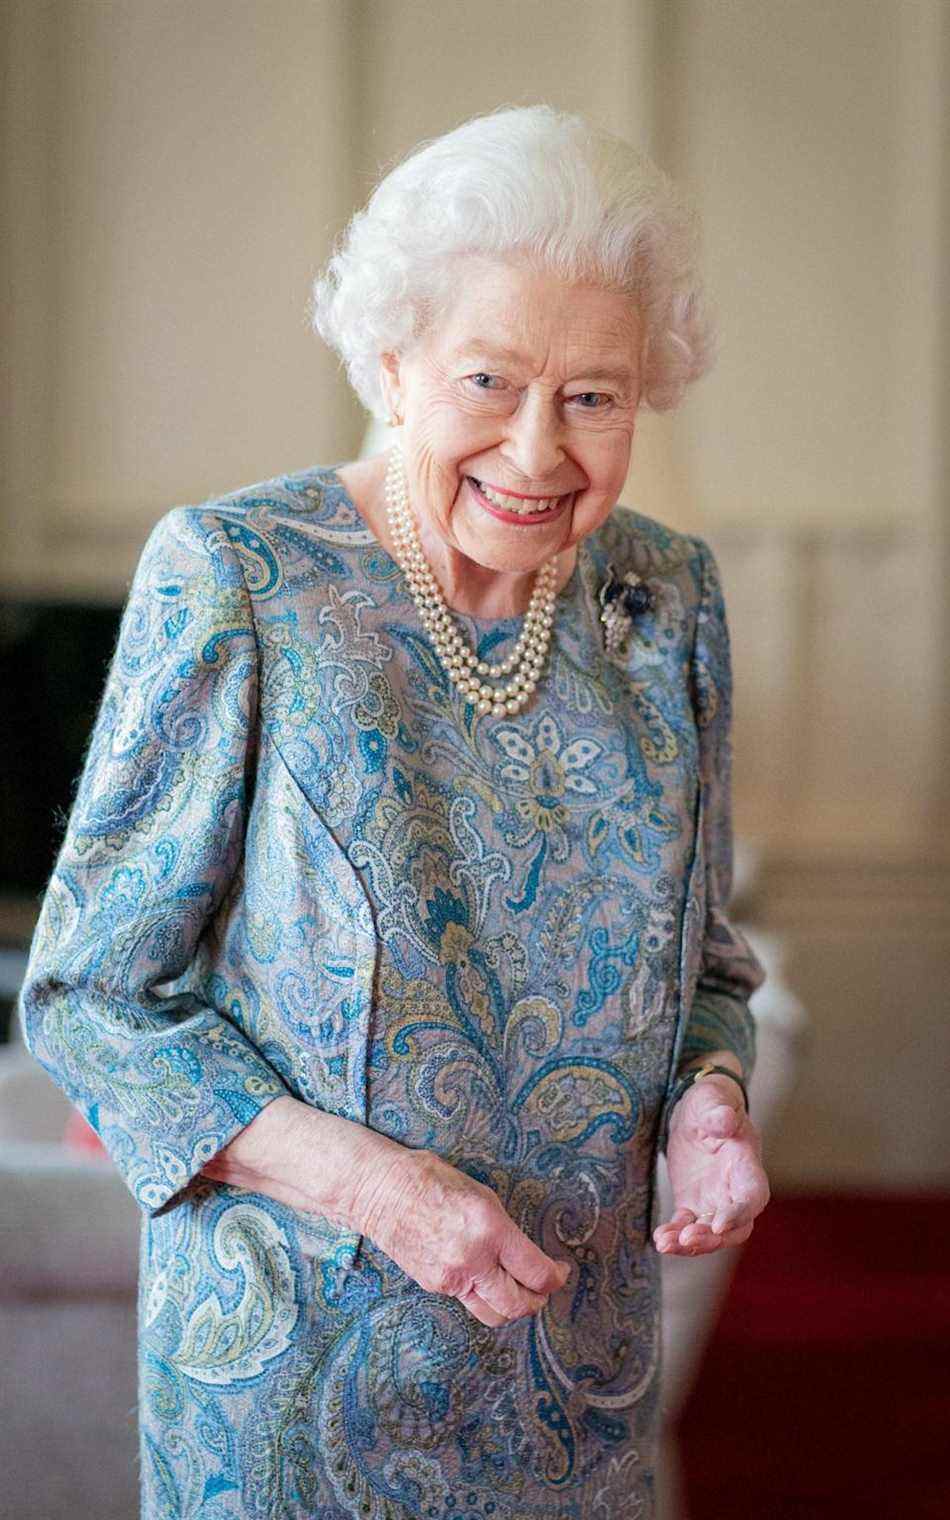 Sa Majesté dans une robe en soie à motifs cachemire bleu et gris, avec une broche en saphir et diamants sur le thème des fruits - Dominic Lipinski/AFP via Getty Images 